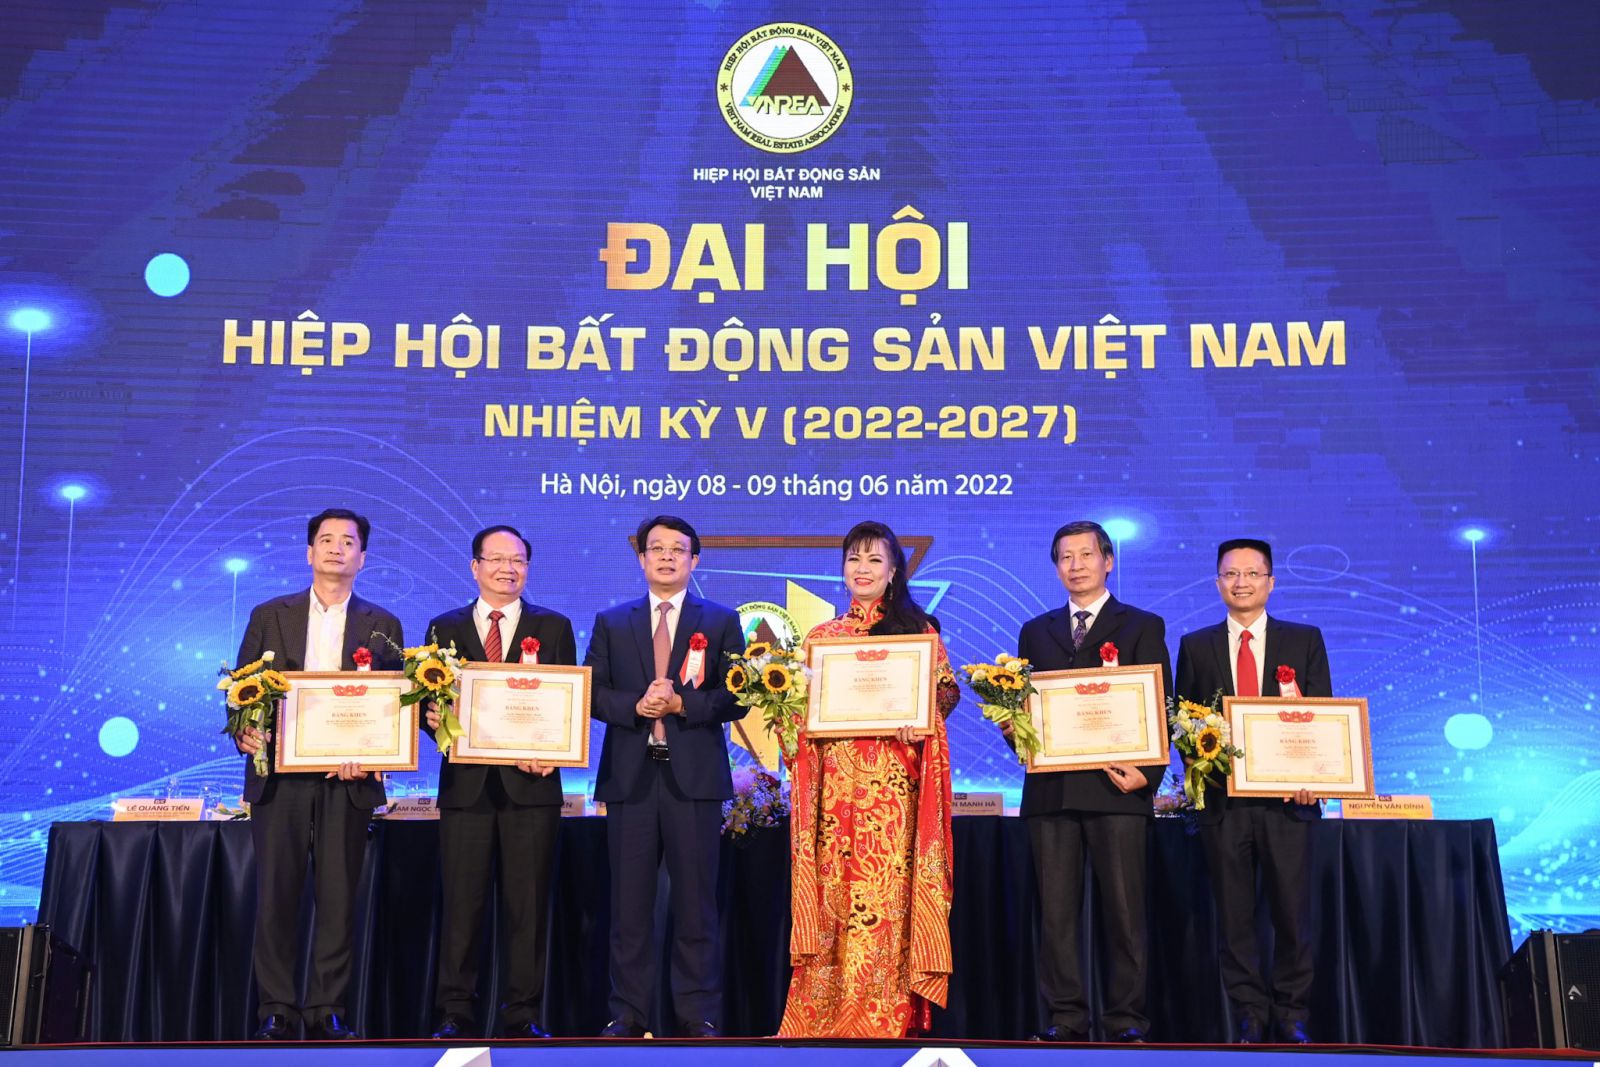 Ông Bùi Hồng Minh, Thứ trưởng Bộ Xây dựng trao bằng khen của Bộ trưởng Bộ Xây dựng cho 2 tập thể và 3 cá nhân thuộc Hiệp hội Bất động sản Việt Nam đã có thành tích xuất sắc